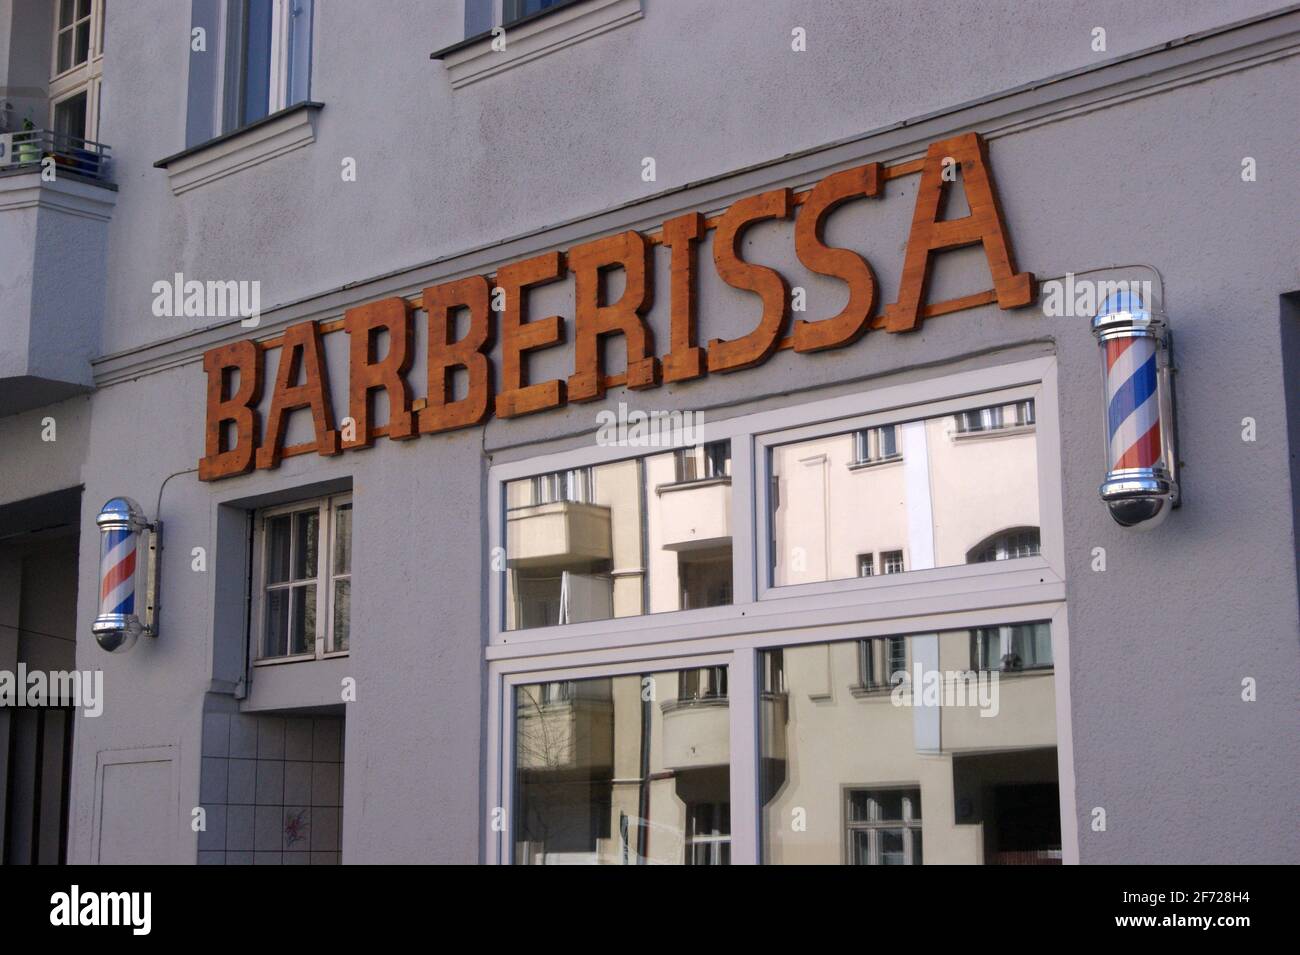 Barberissa: Ein Barbershop am Brunsbütteler Damm in Berlin-Spandau. Stock Photo